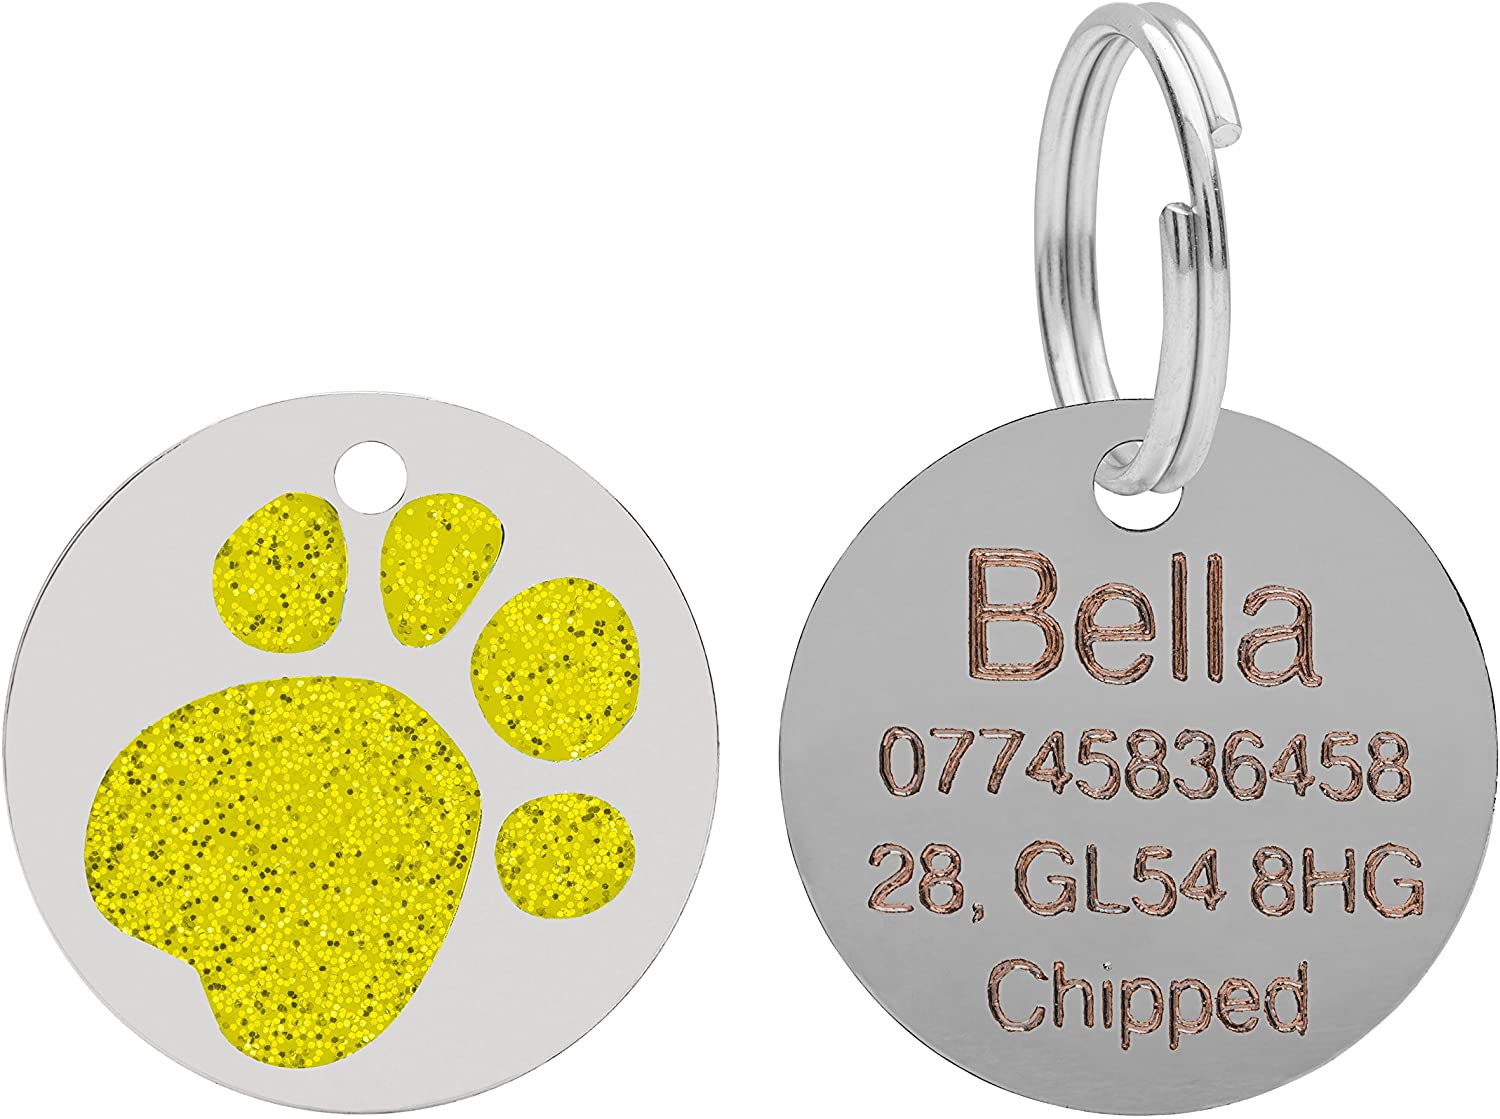  Placa para mascotas, con diseño de huella de pata, brillante, para gatos y perros, 25 mm 